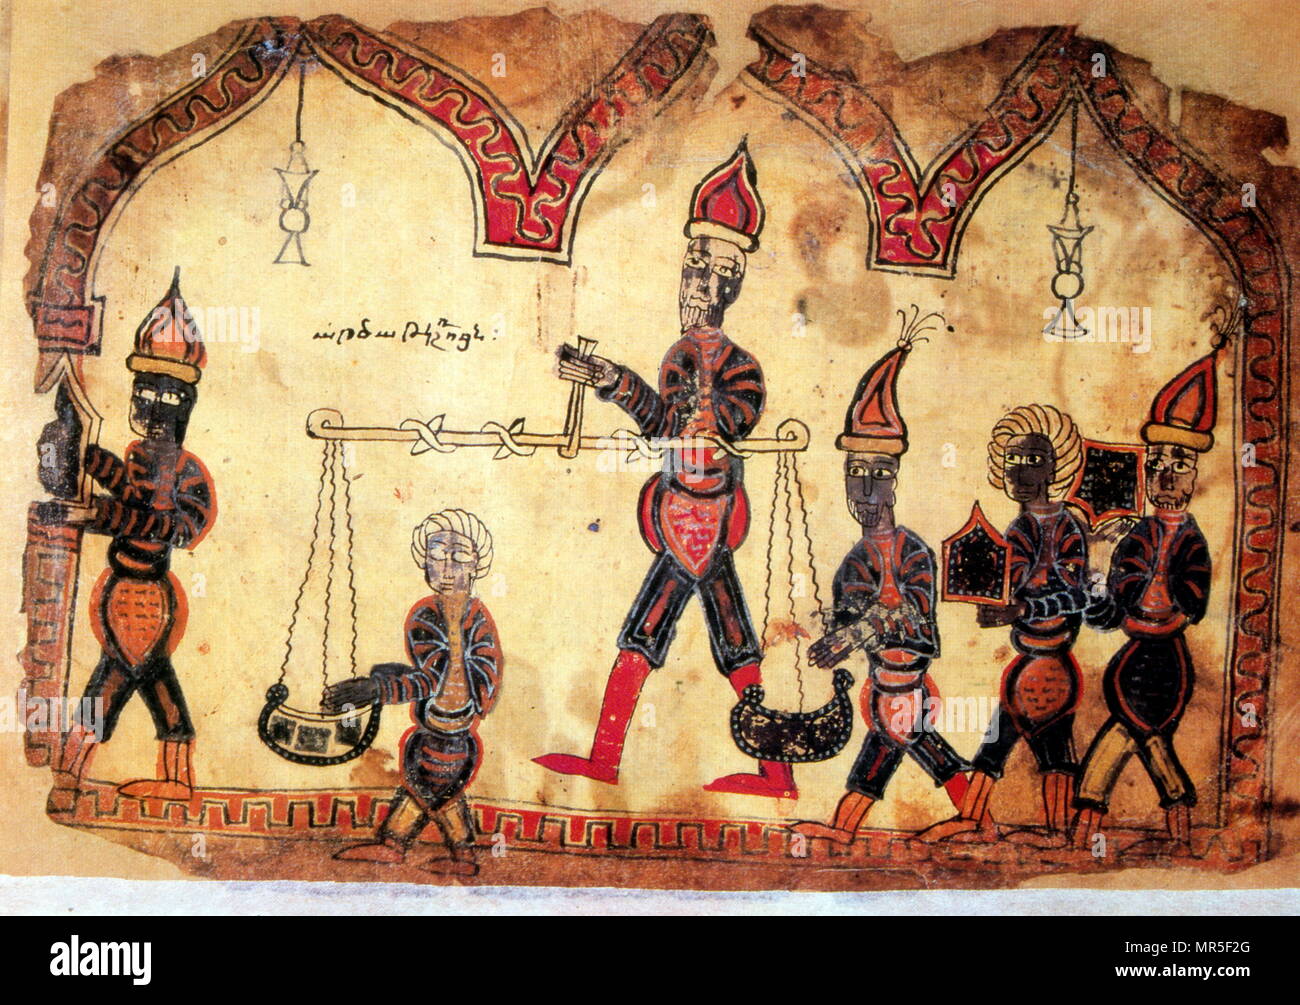 Manuscrit illustré chrétienne arménienne montrant la vision chrétienne du jugement final. 14e siècle Banque D'Images